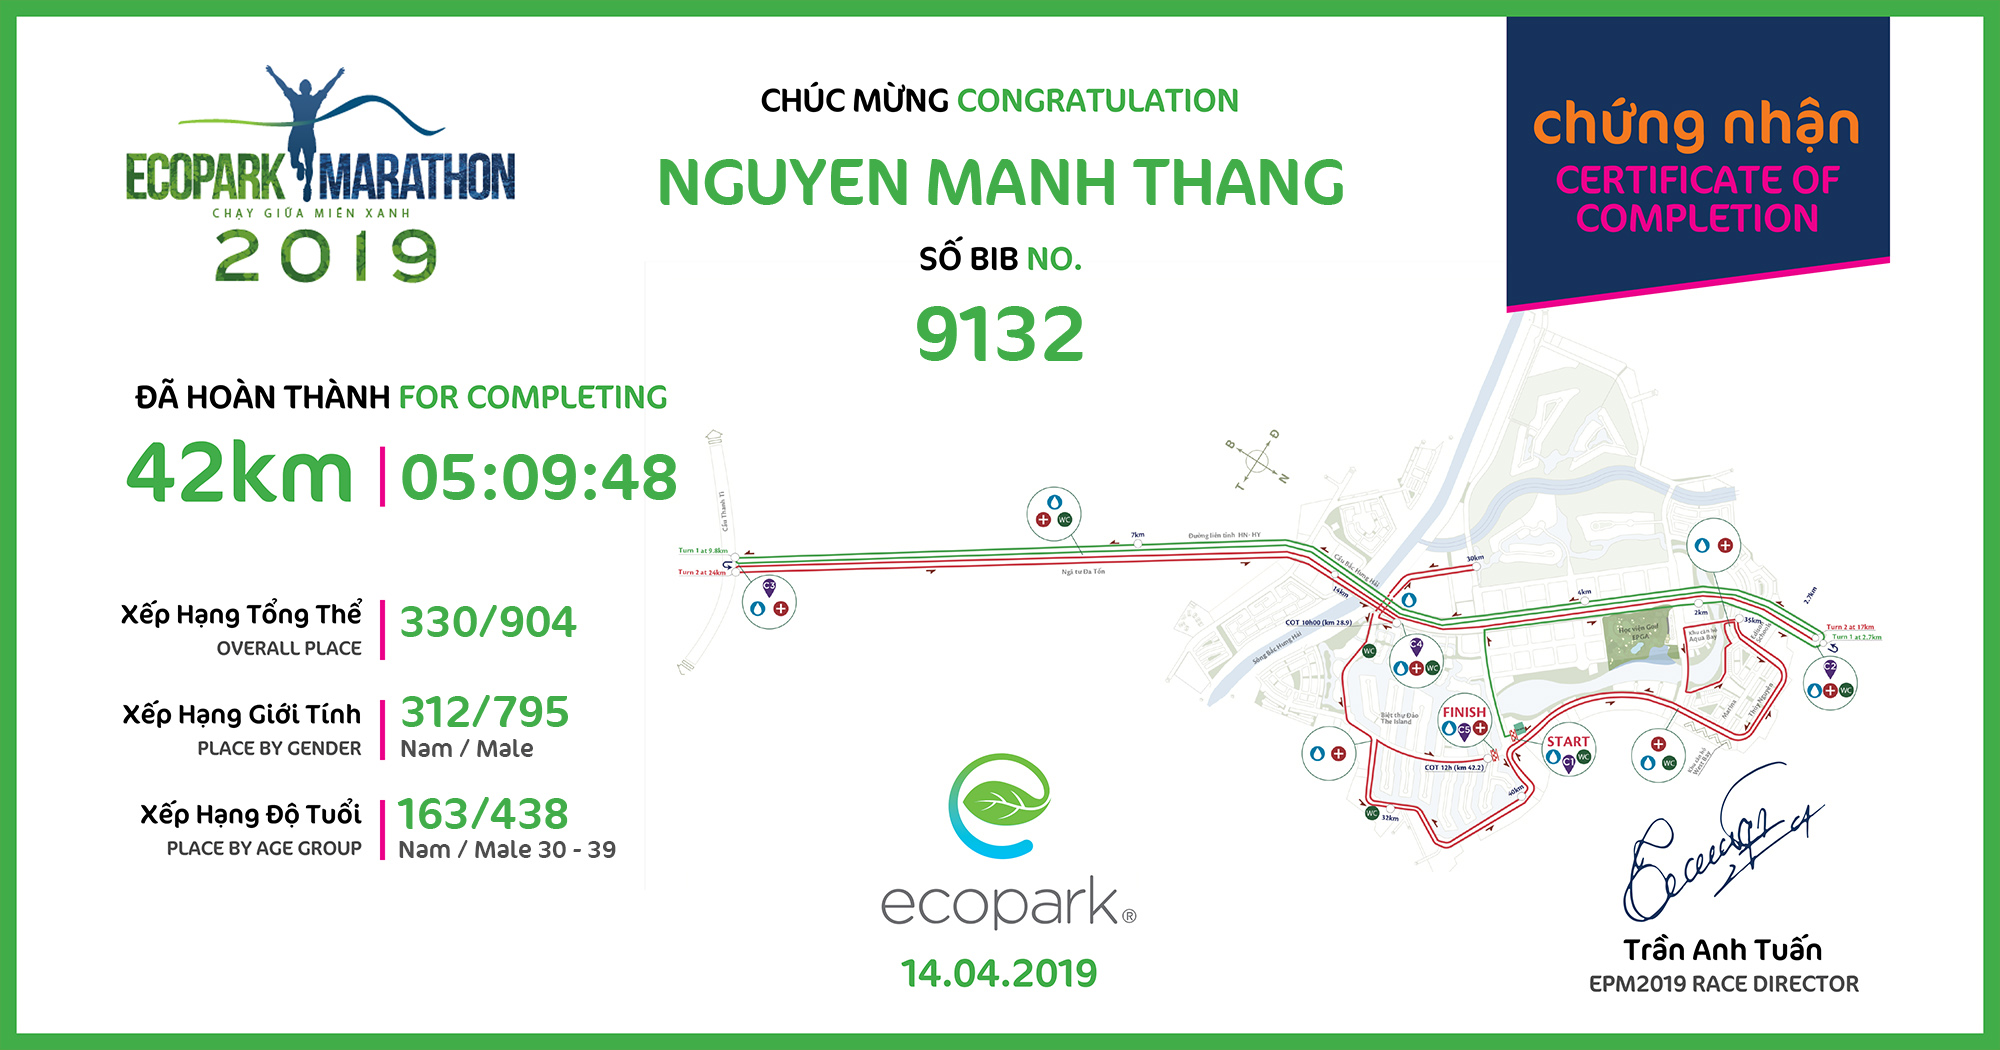 9132 - Nguyen Manh Thang